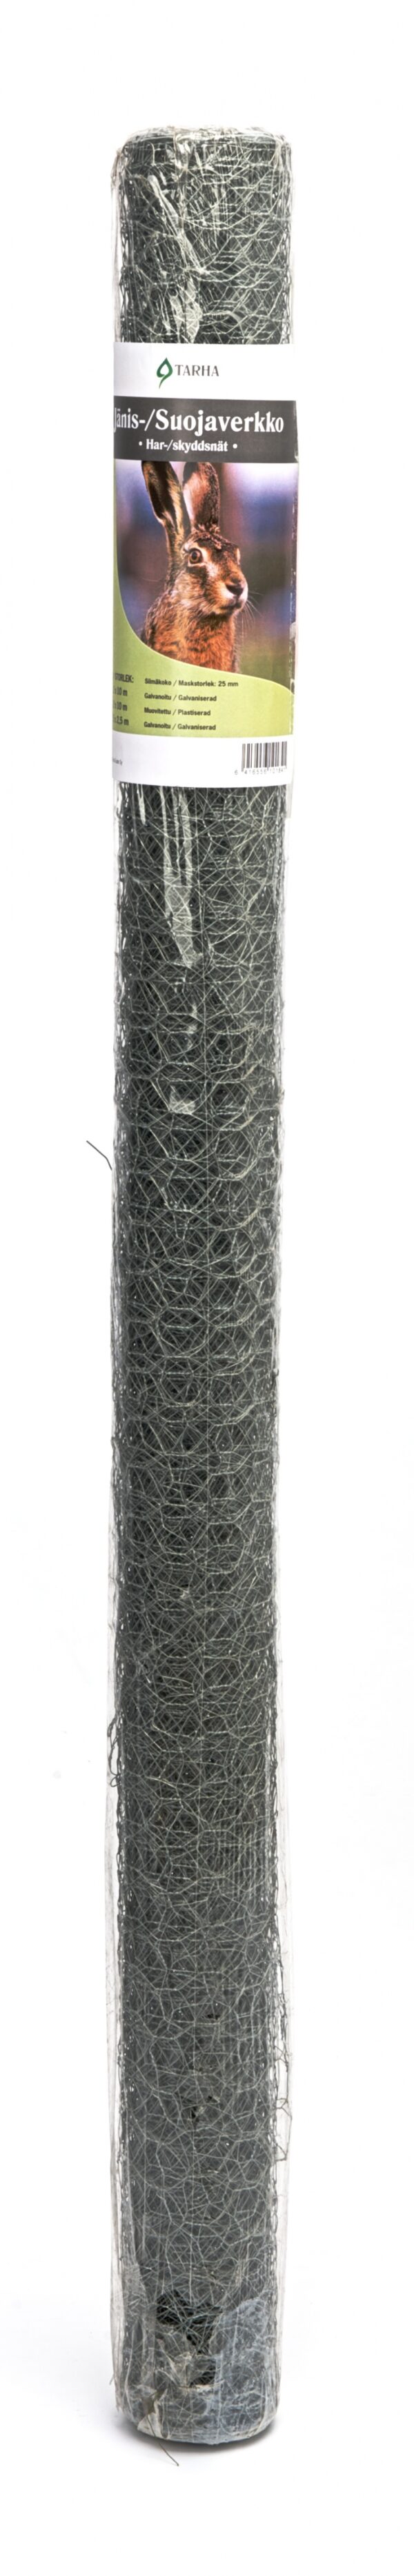 Suojaverkko jäniksiltä 1,5 x 2,5m metallilangan paksuus 0,9mm muovipäällysteinen